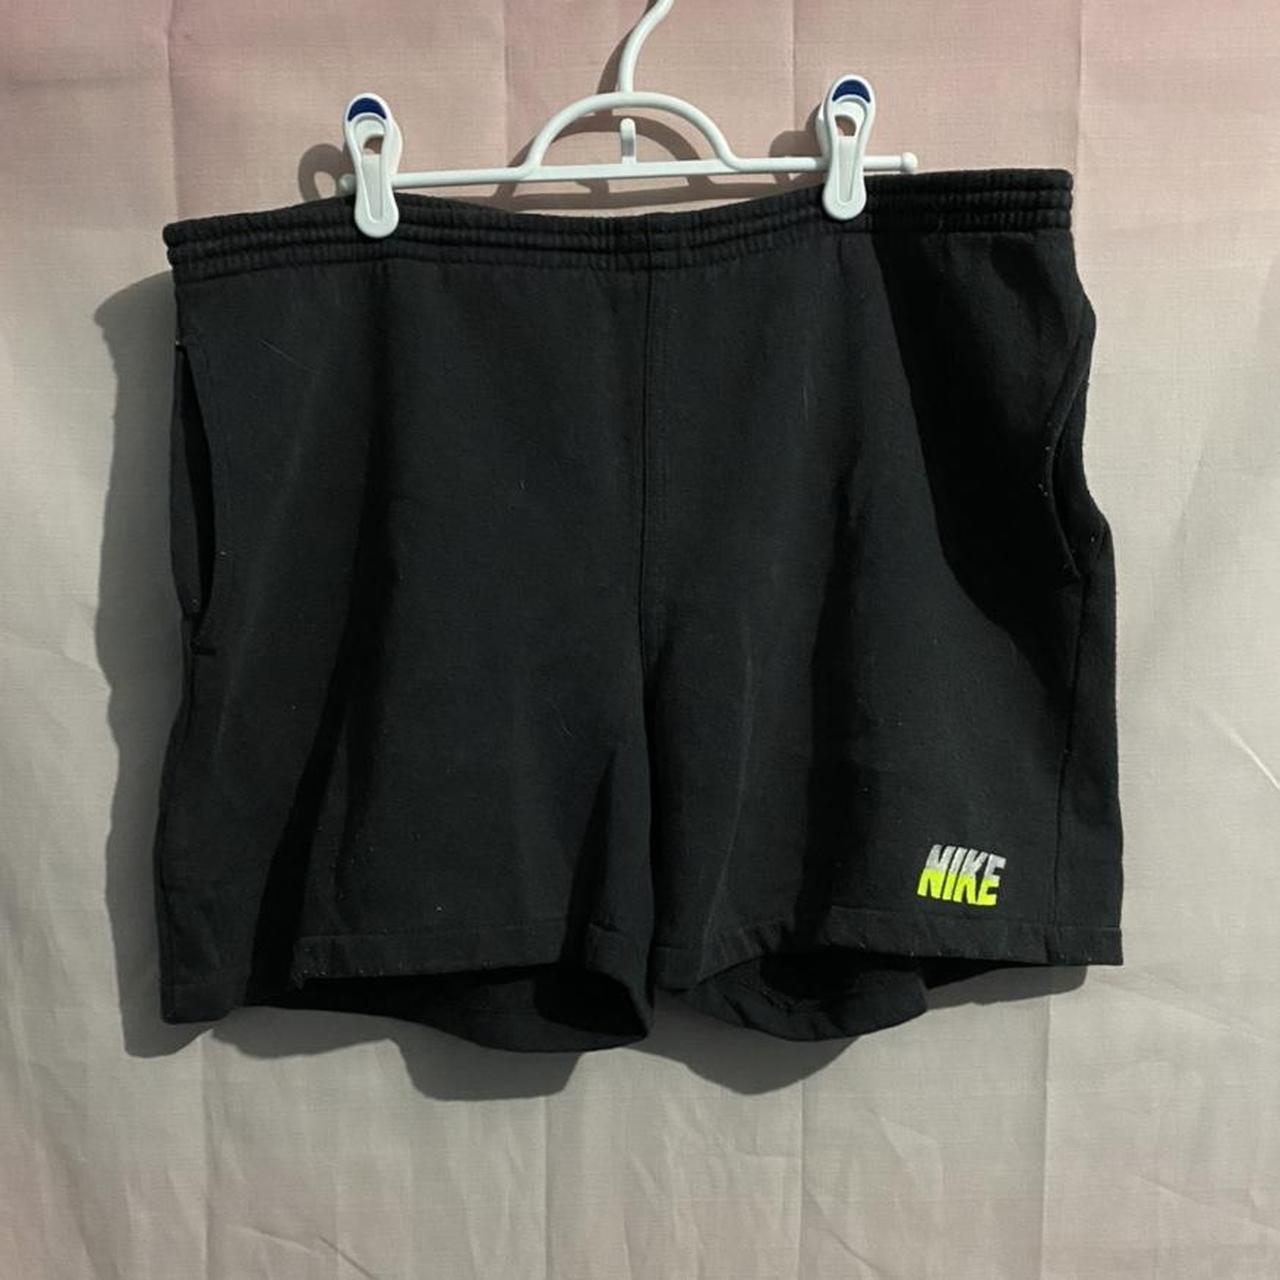 Product Image 1 - 90s Nike Sweat Shorts Size